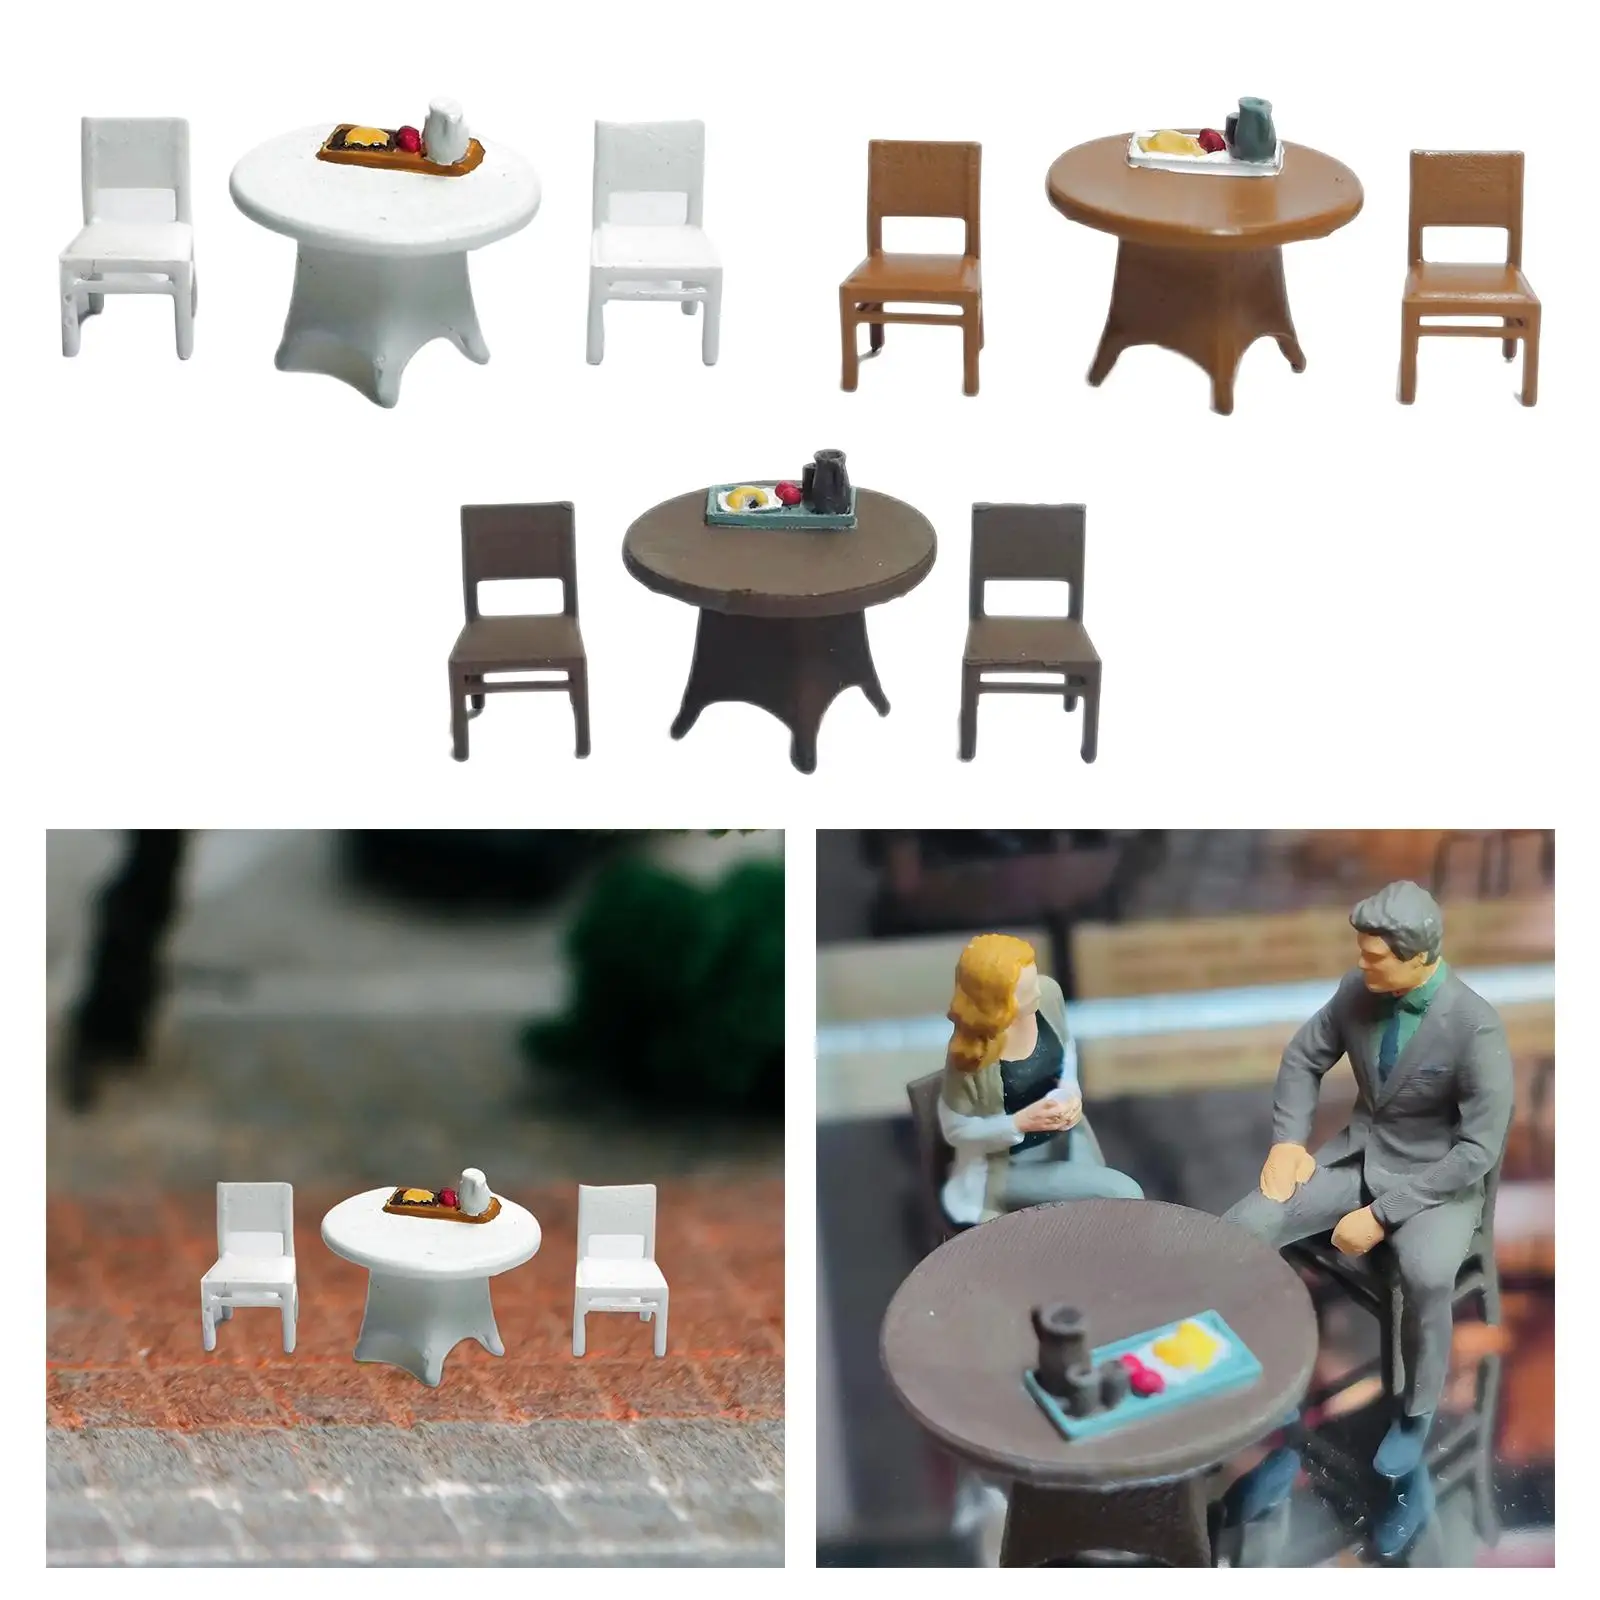 3 предмет, ръчно рисувани, модел на маса и стол 1/64 с тава за хранене, влакове, архитектурно оформление от пясък, за украса на масата в миниатюра